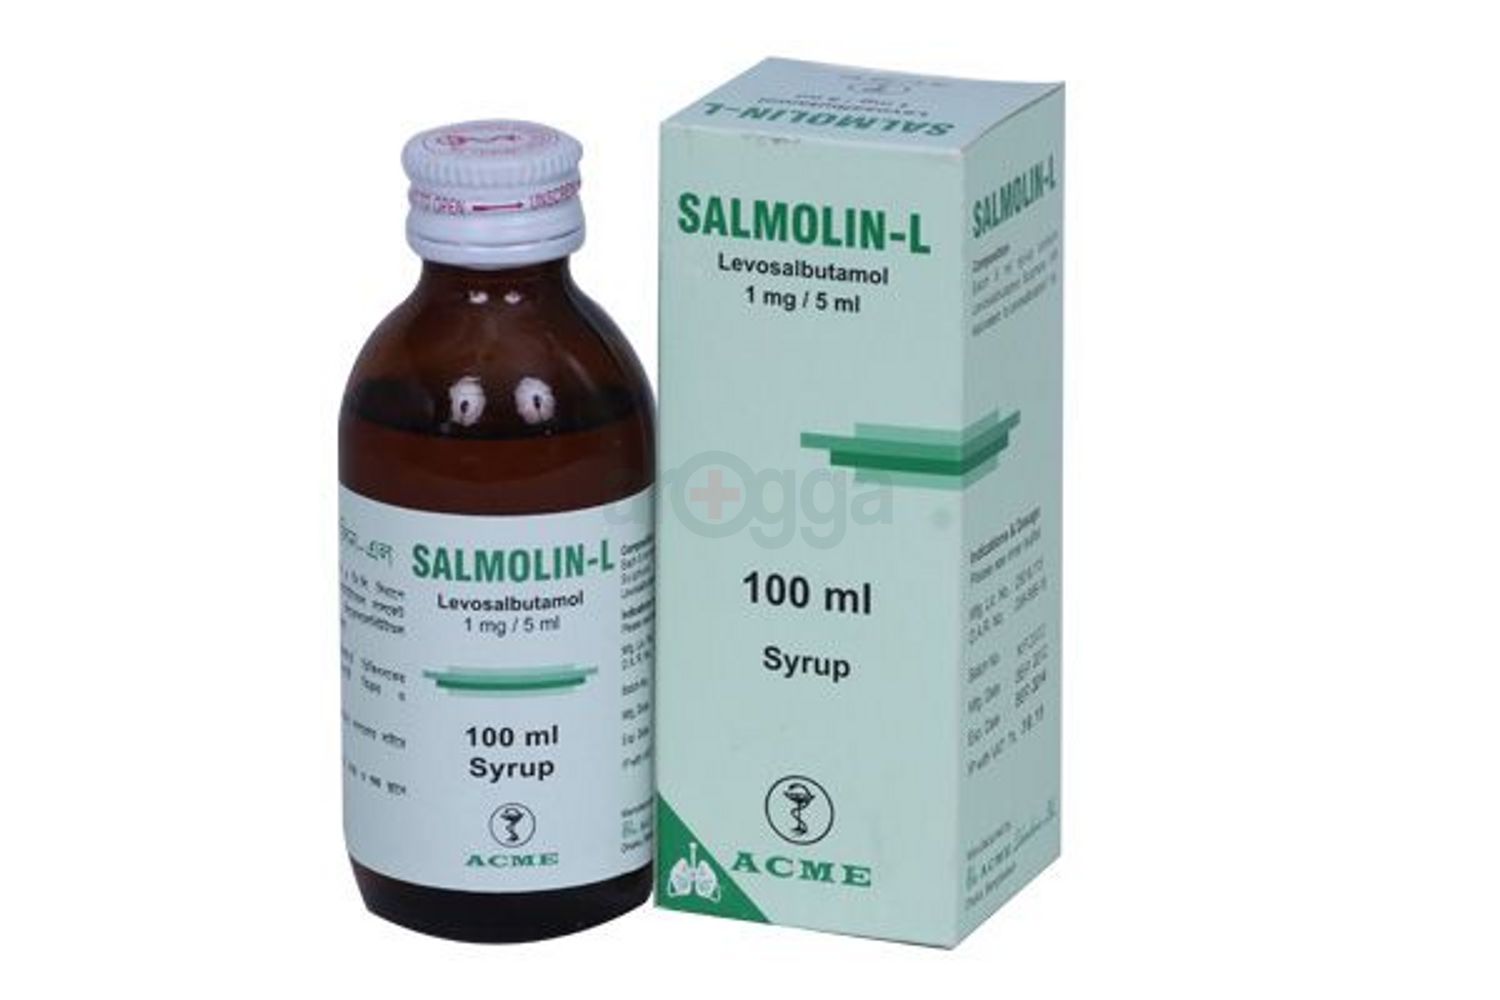 Salmolin-L